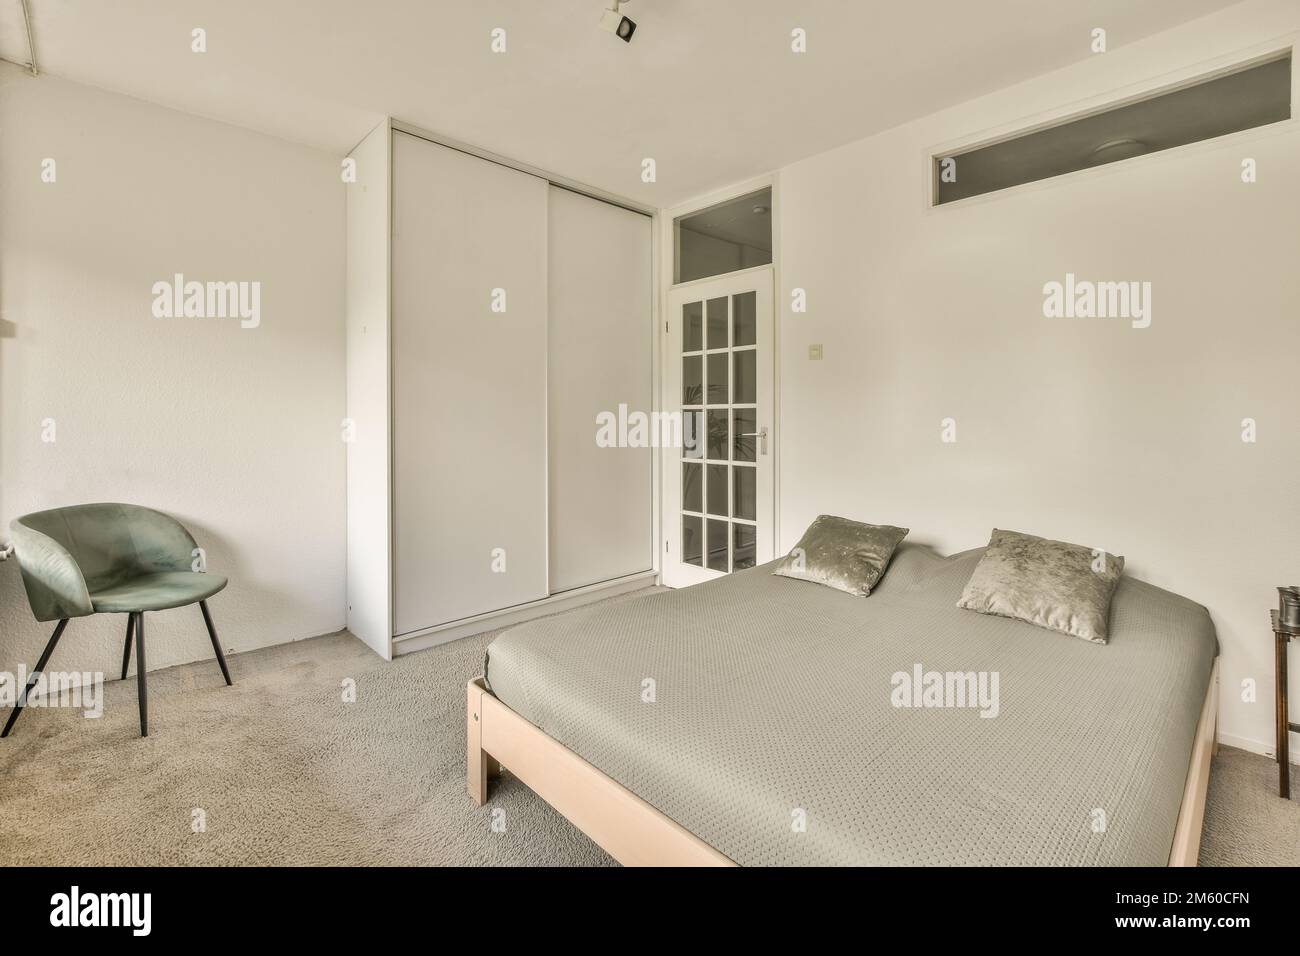 Ein Schlafzimmer mit einem Bett, Stuhl und Schränken in der Rückwand zur anderen Seite des Zimmers Stockfoto